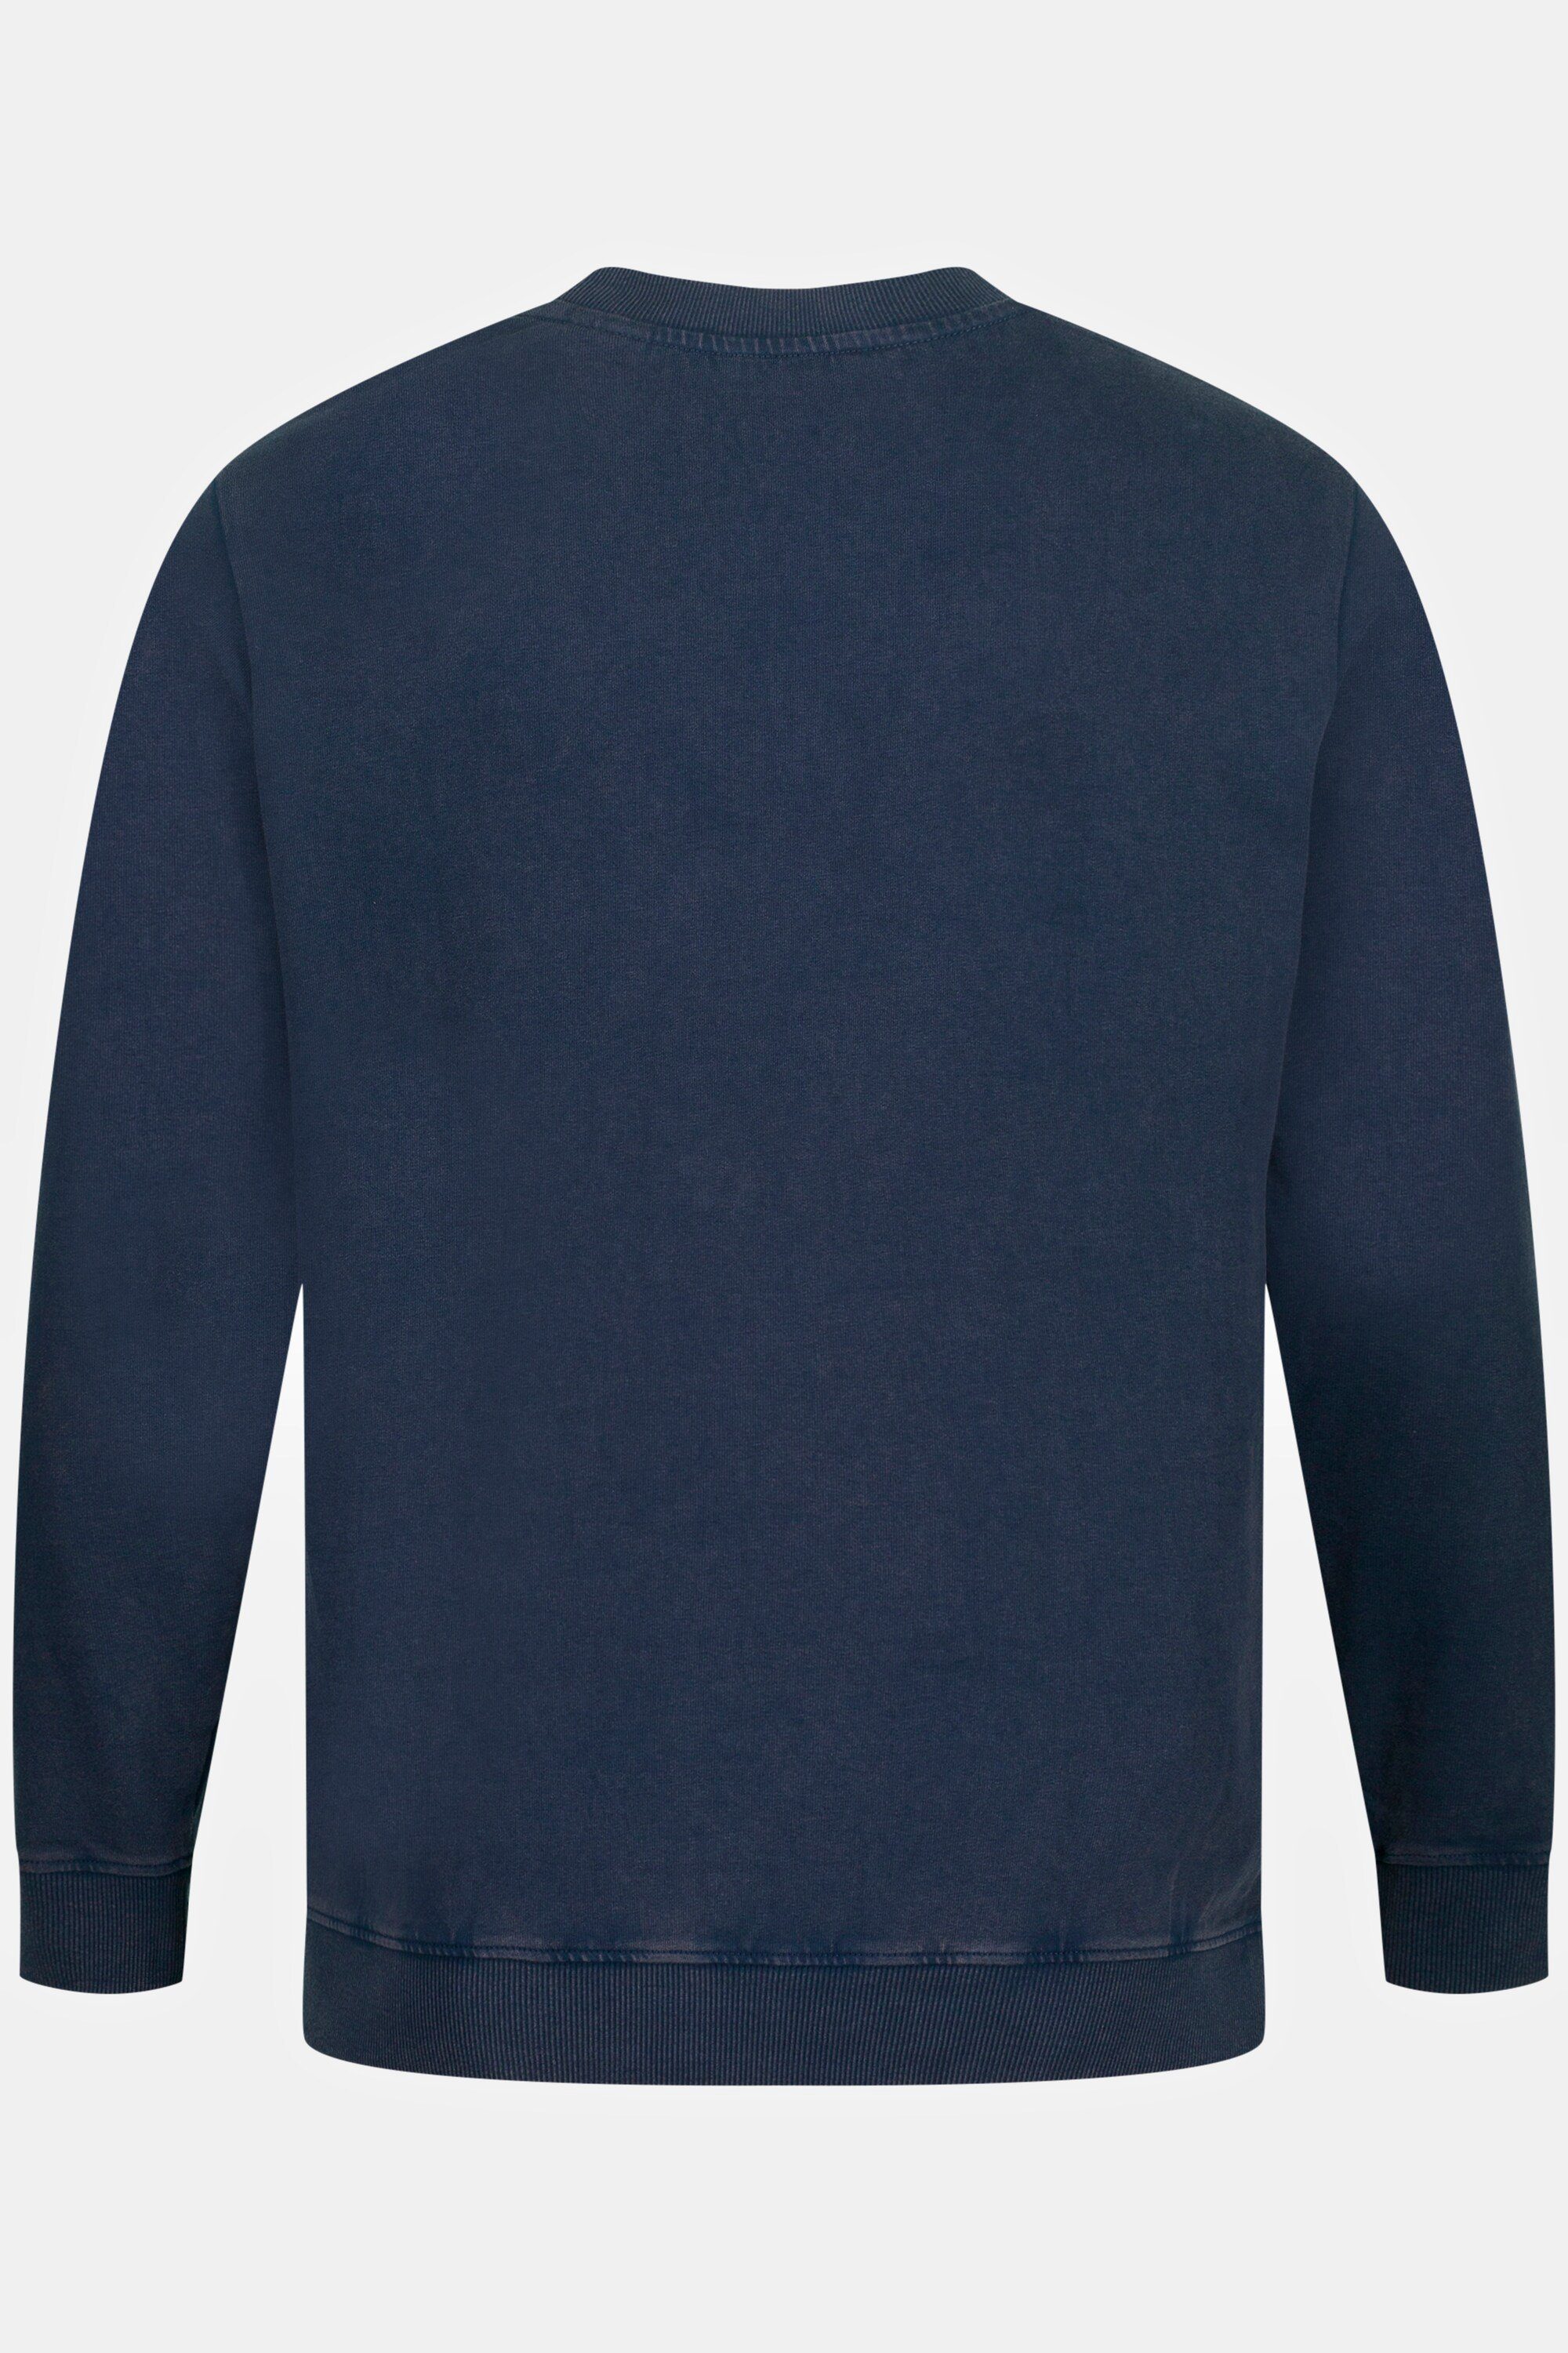 mattes leichte Qualität T-Shirt washed JP1880 Bauchfit nachtblau Sweatshirt acid